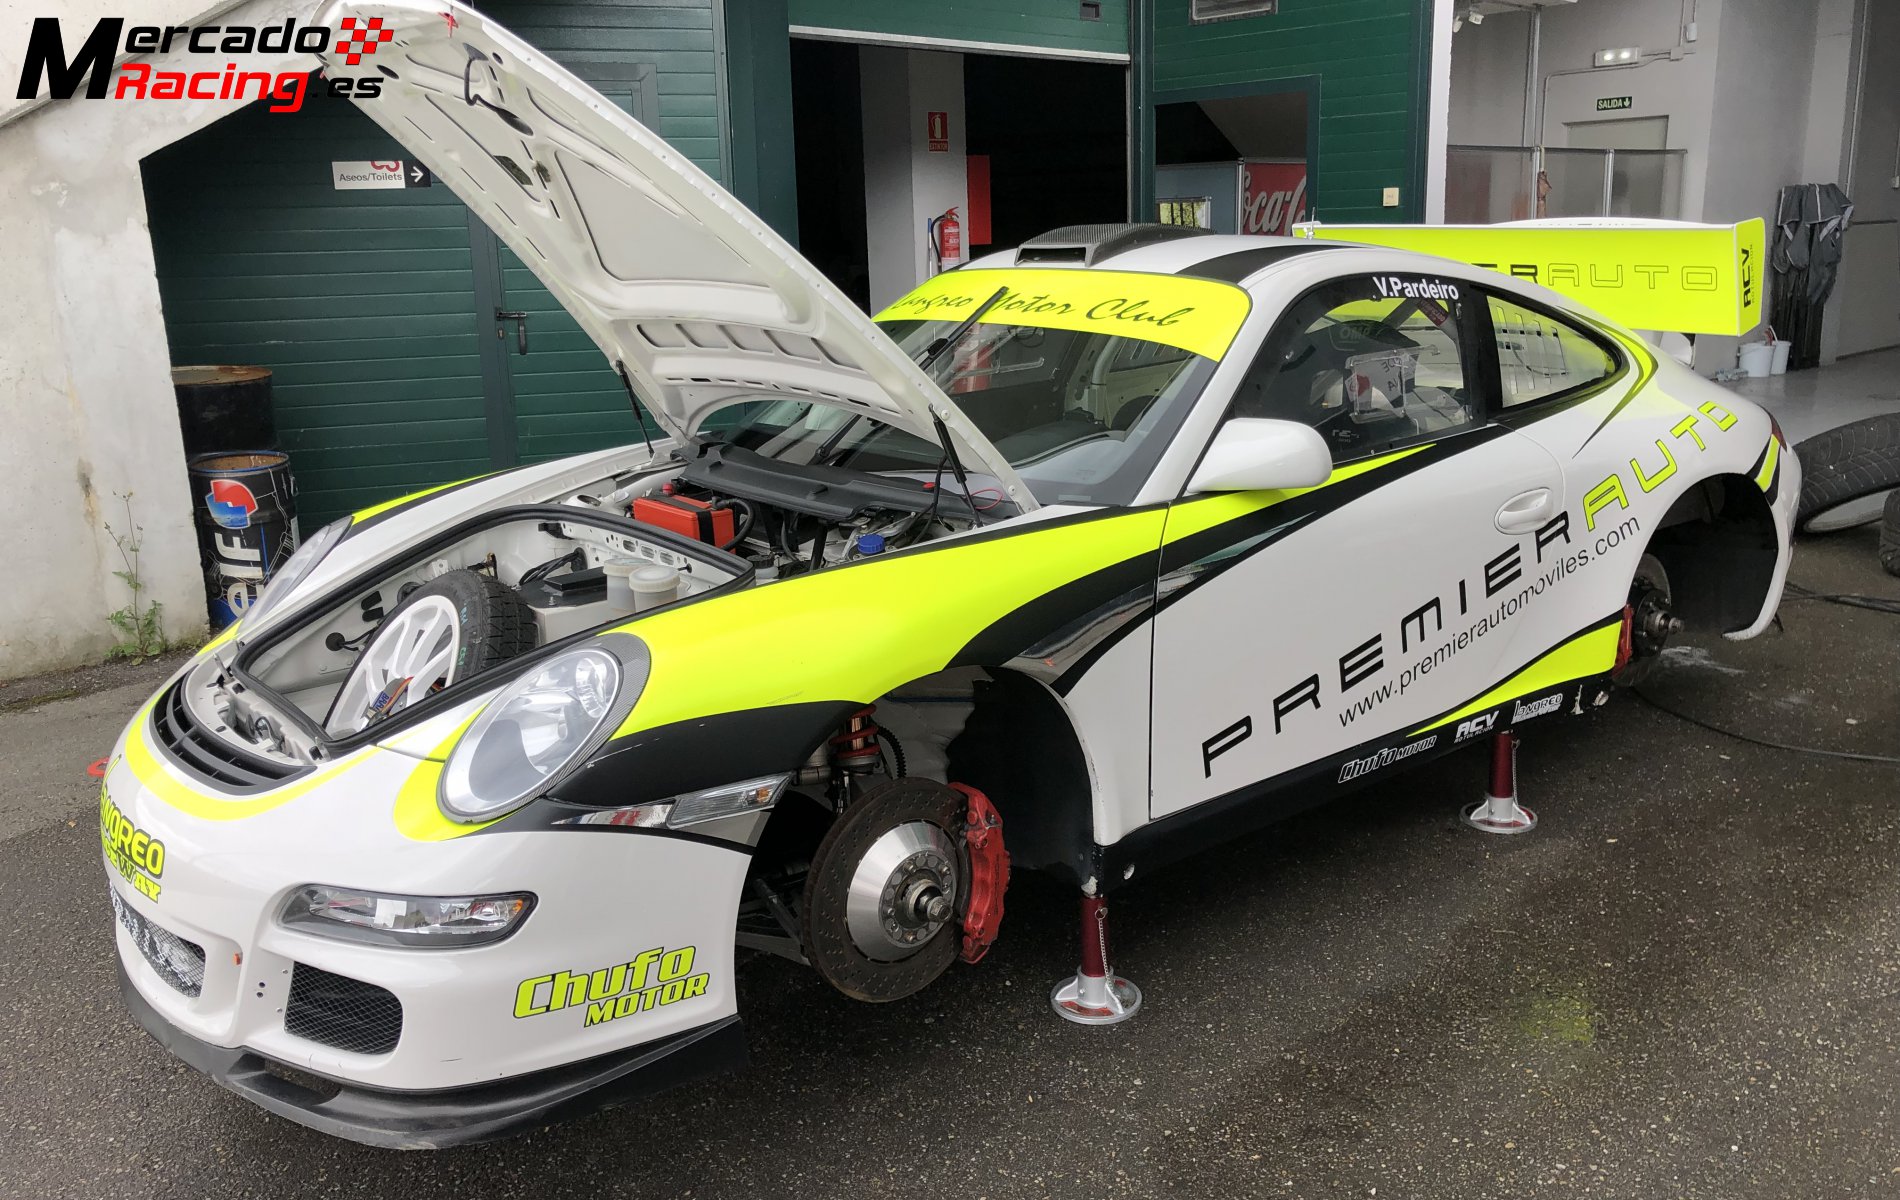 Porsche 997 gt3 cup rallye “78.000€”